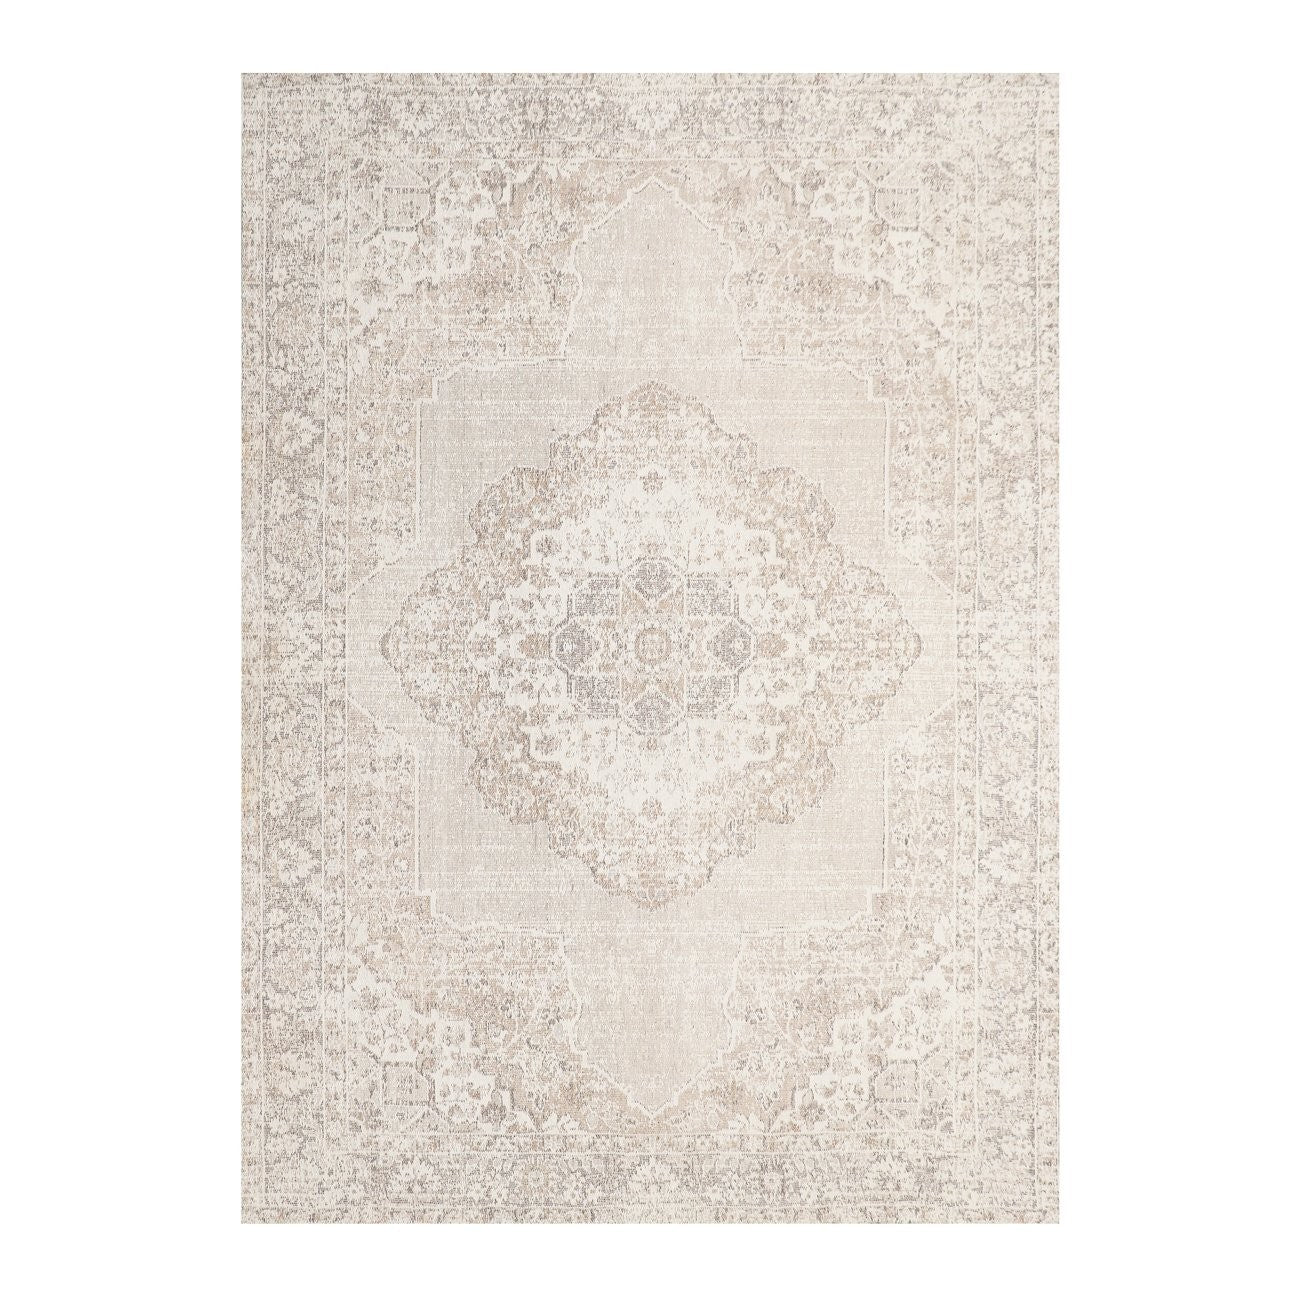 Antalya Turkish Style Floor Rug - Off-White/Beige- 240cm x 340cm